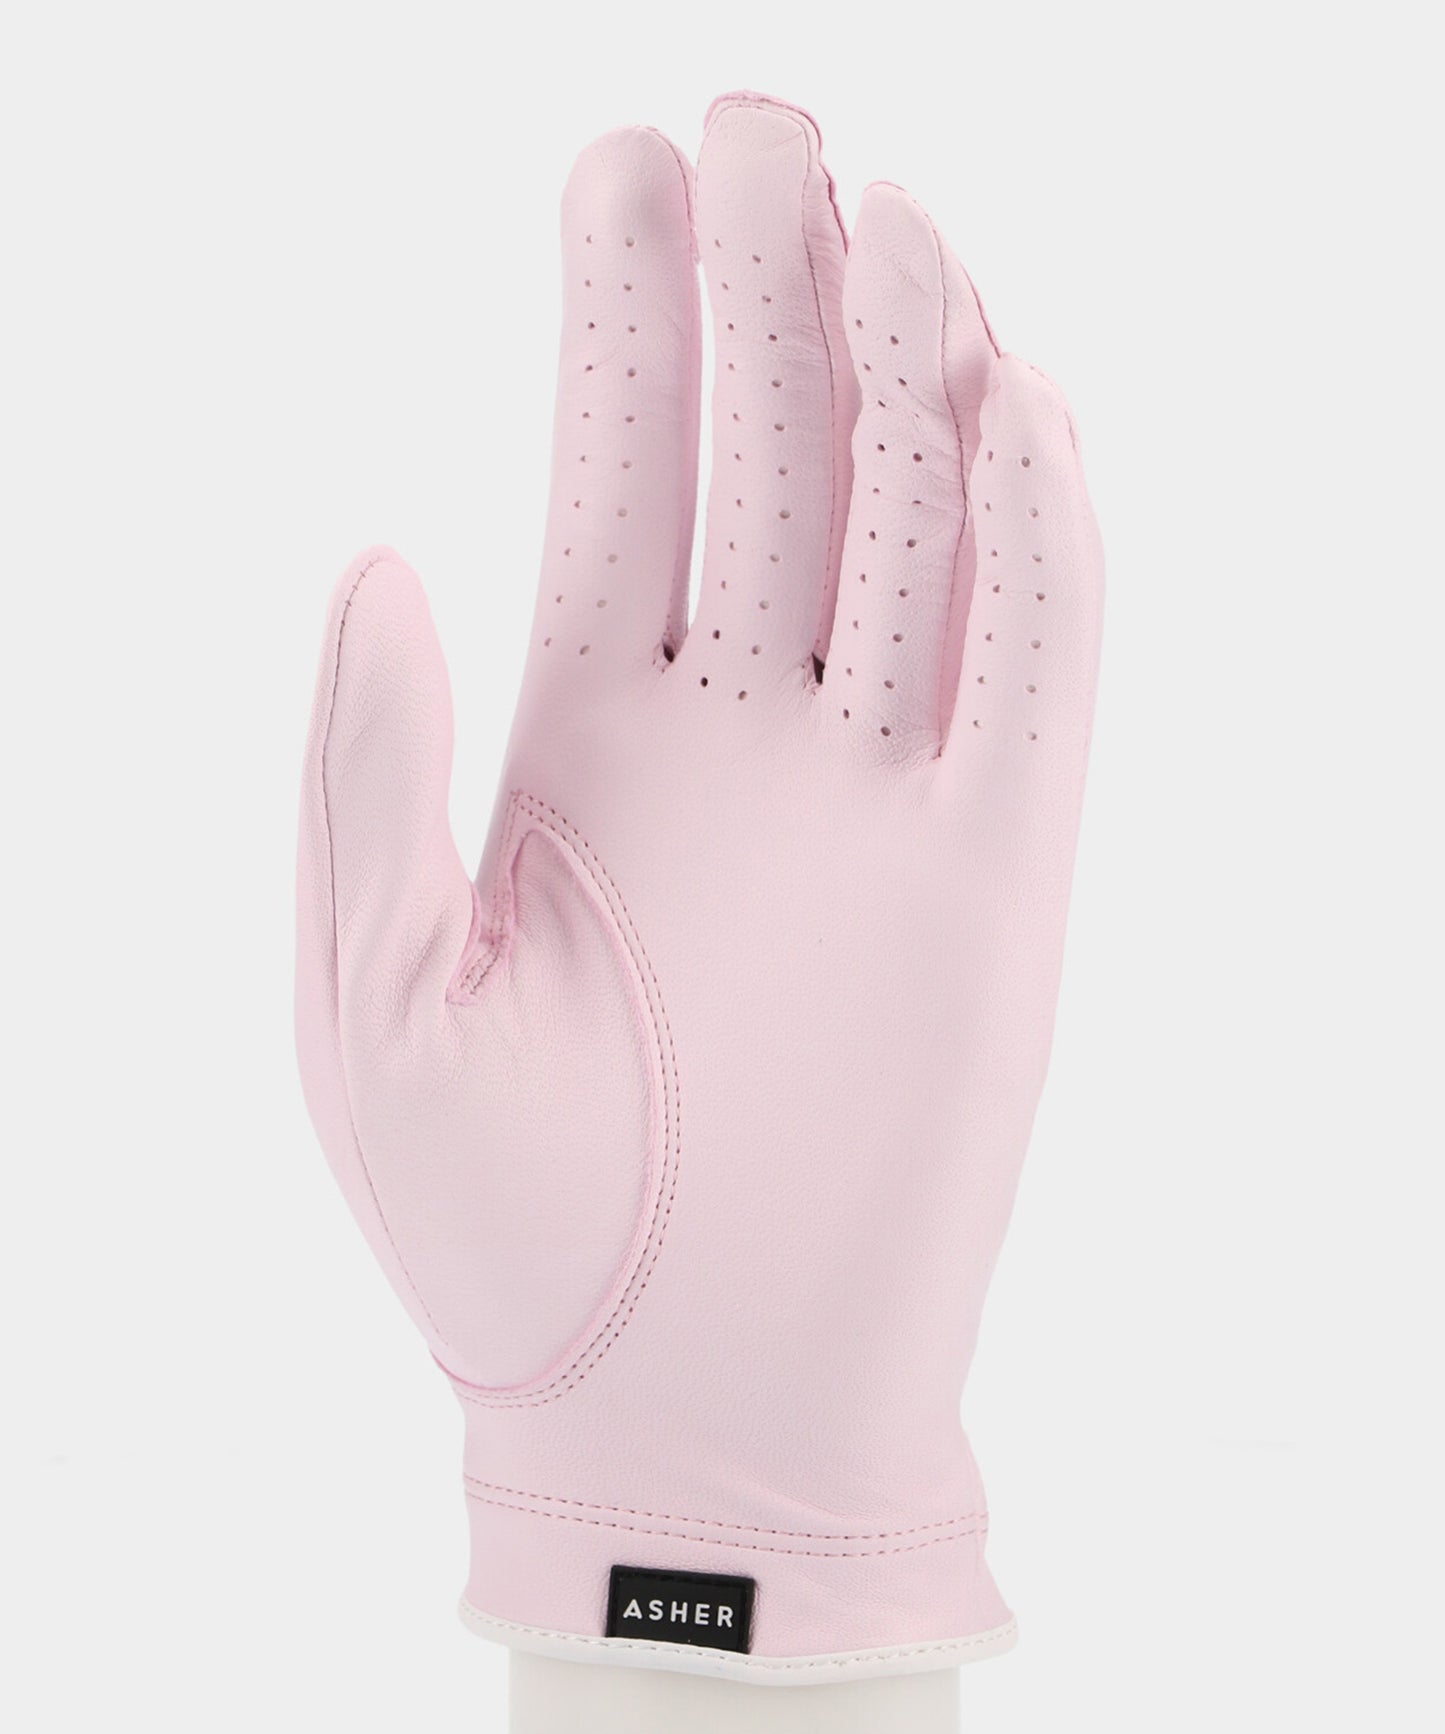 Asher Premium Glove PINK